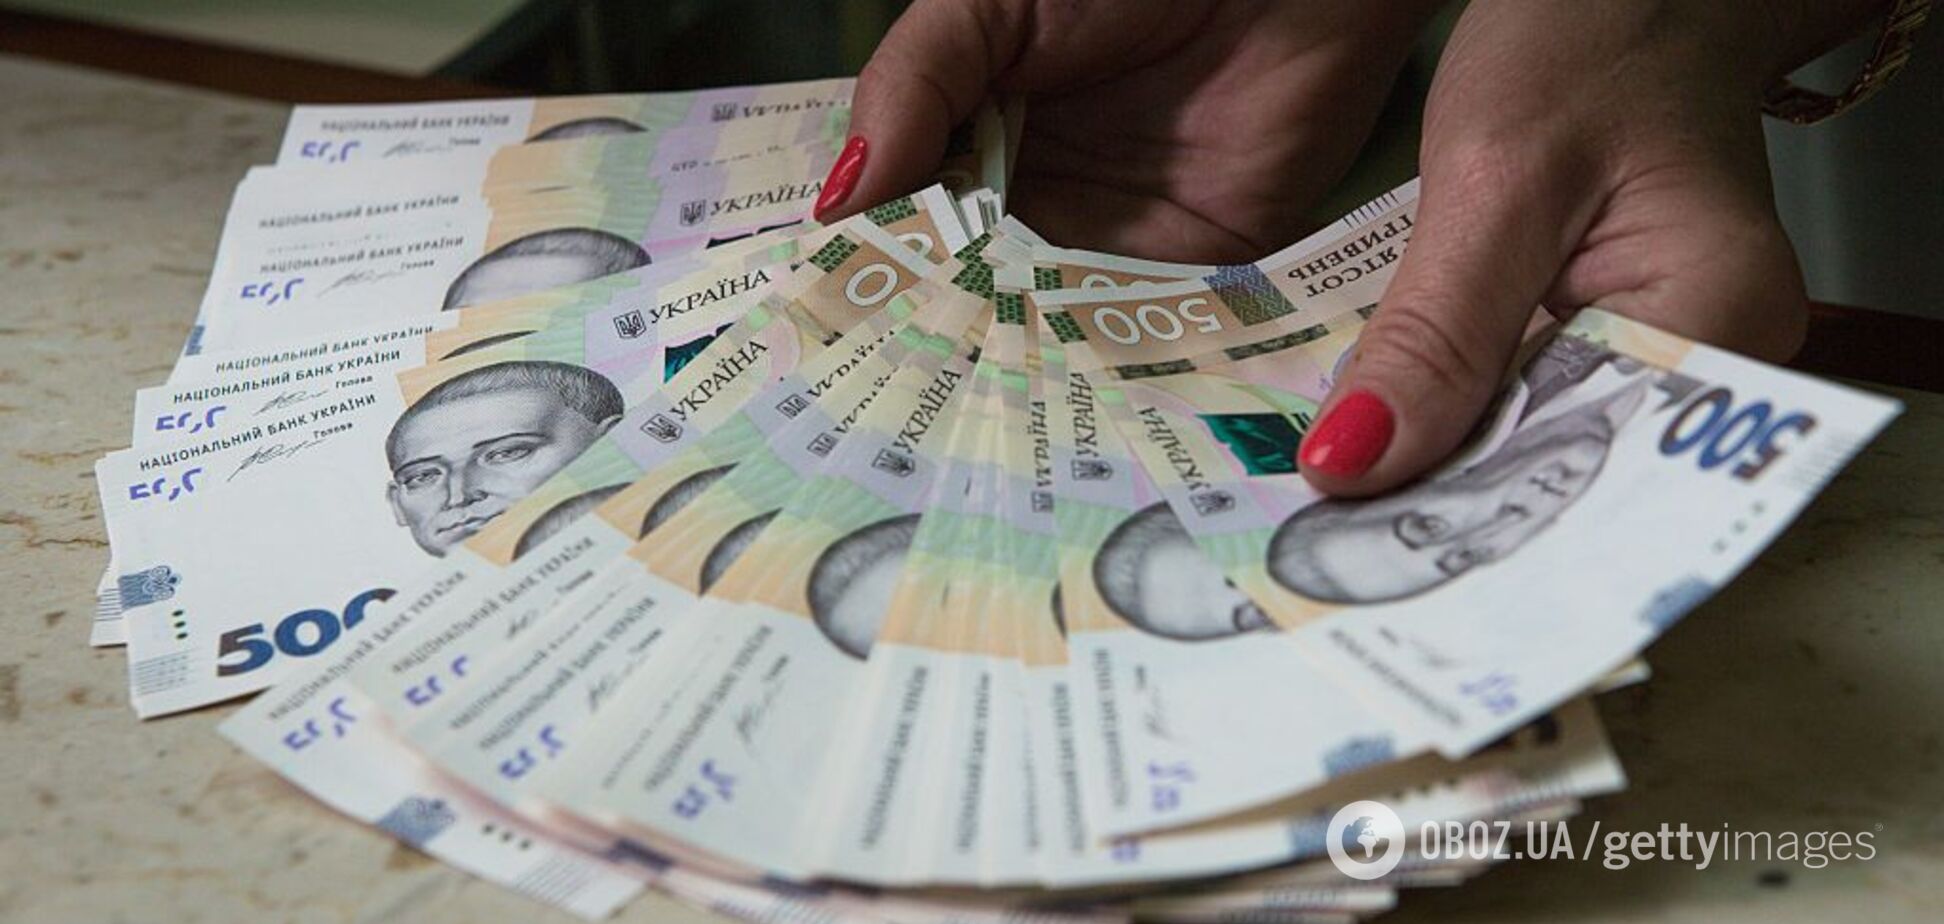 'Ловят на нарушениях': украинцы придумали хитрый способ повышения пенсий